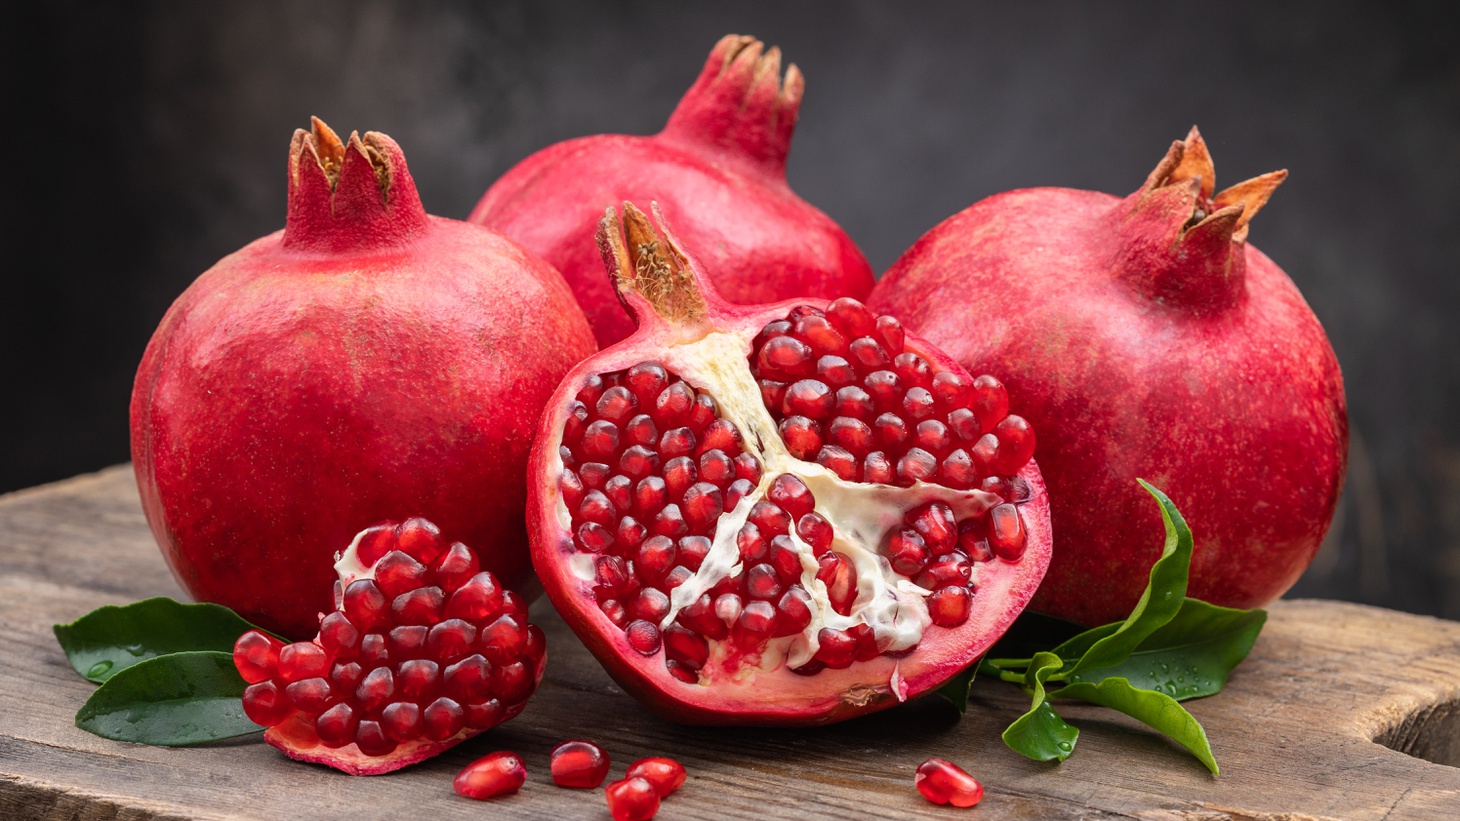 10 loại trái cây có tác dụng đặc biệt làm tăng chất lượng tinh trùng - 6